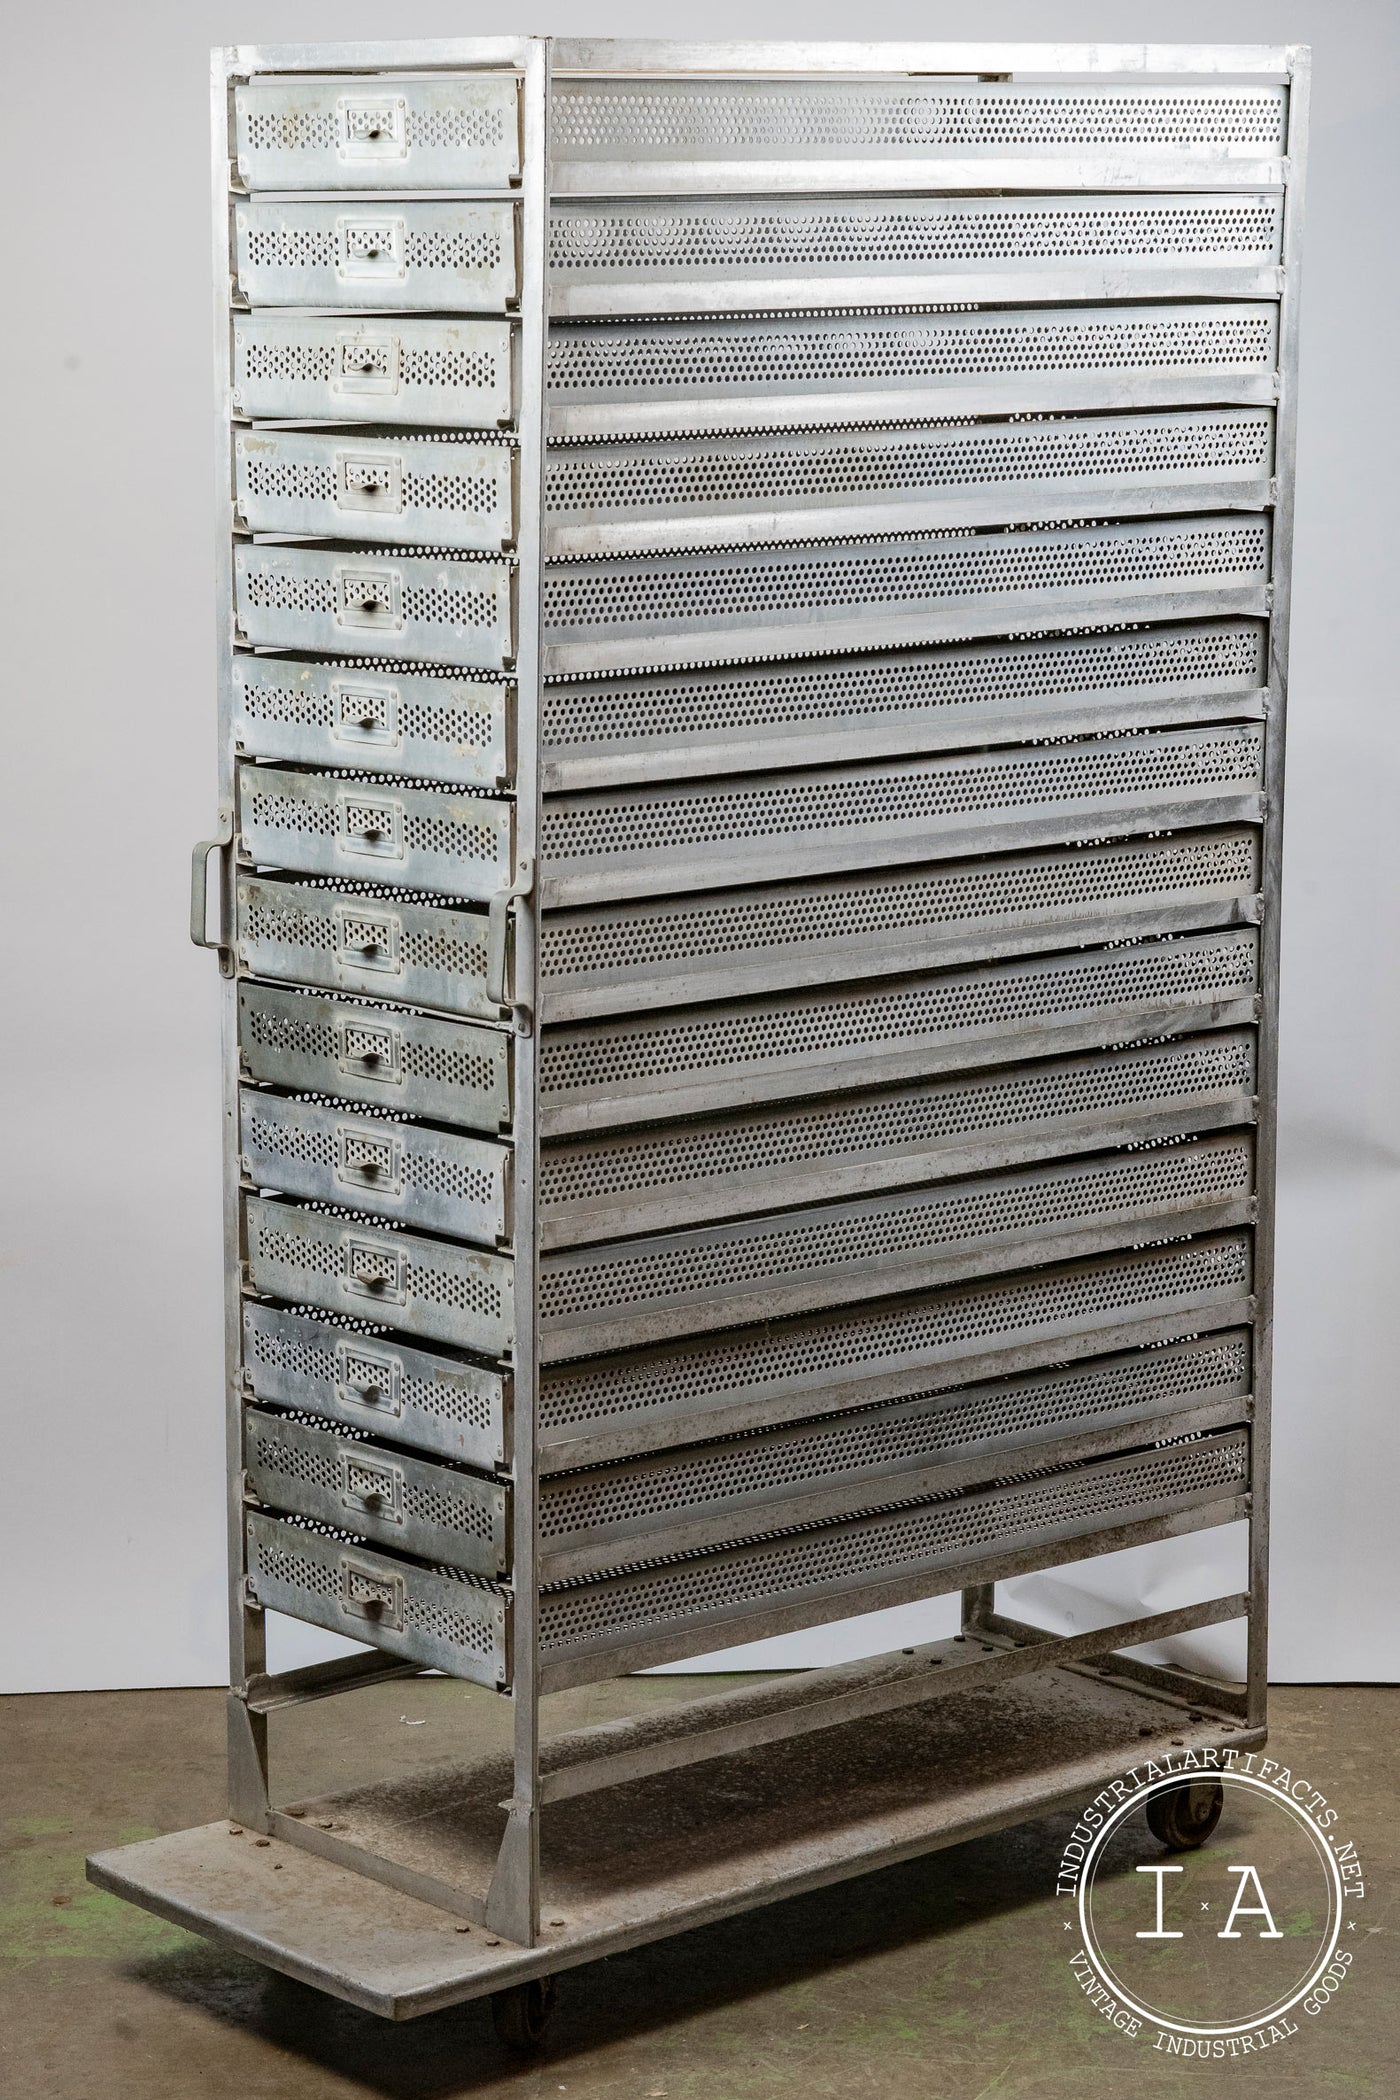 C. 1940 15 Drawer Aluminum Incubator Cabinet